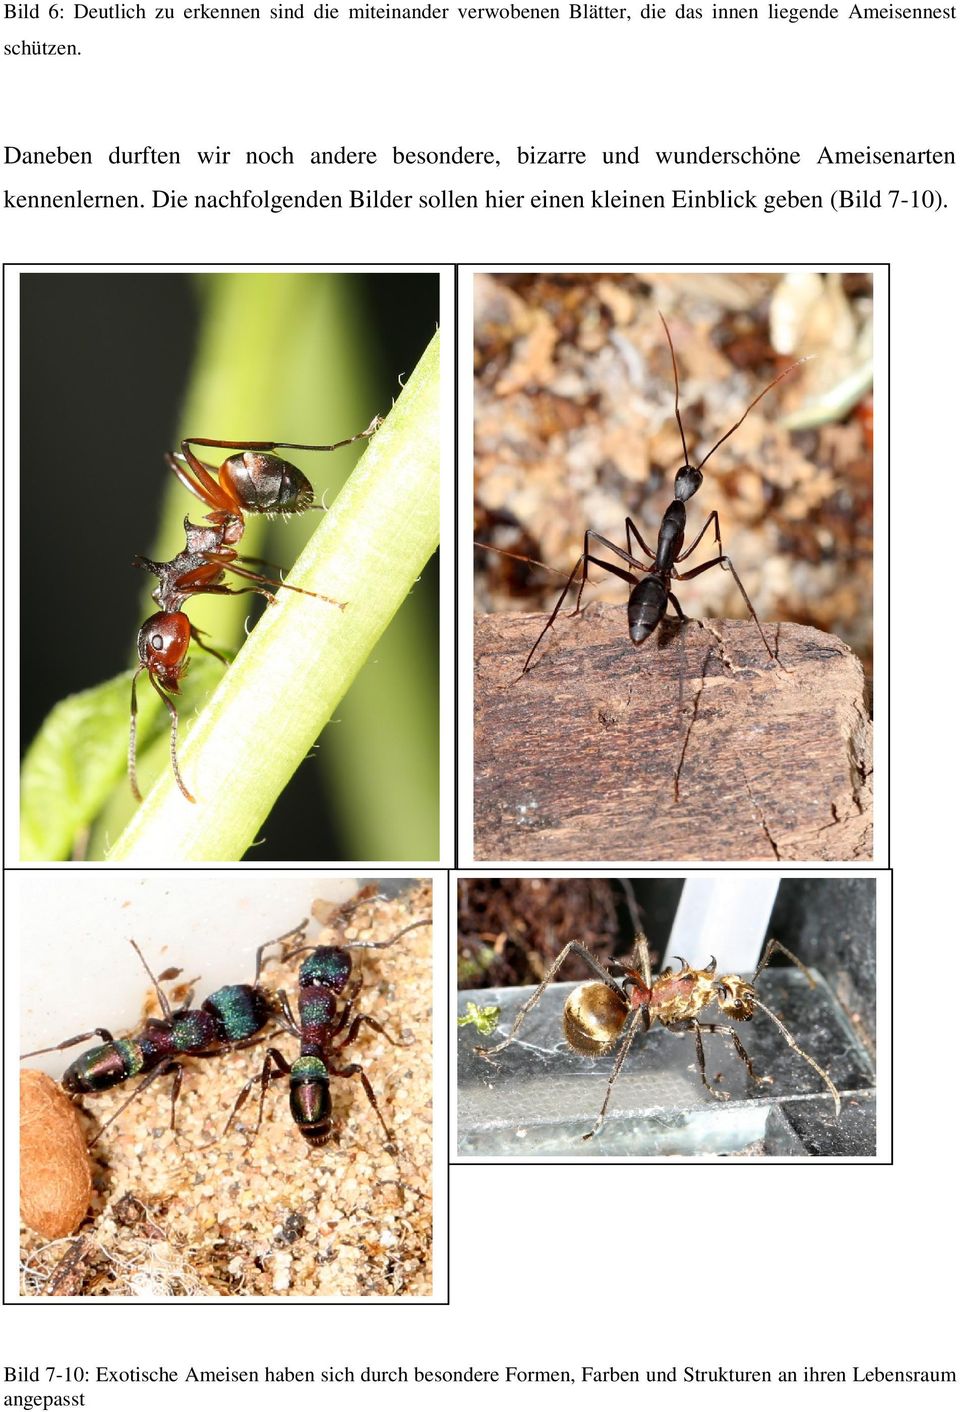 Daneben durften wir noch andere besondere, bizarre und wunderschöne Ameisenarten kennenlernen.